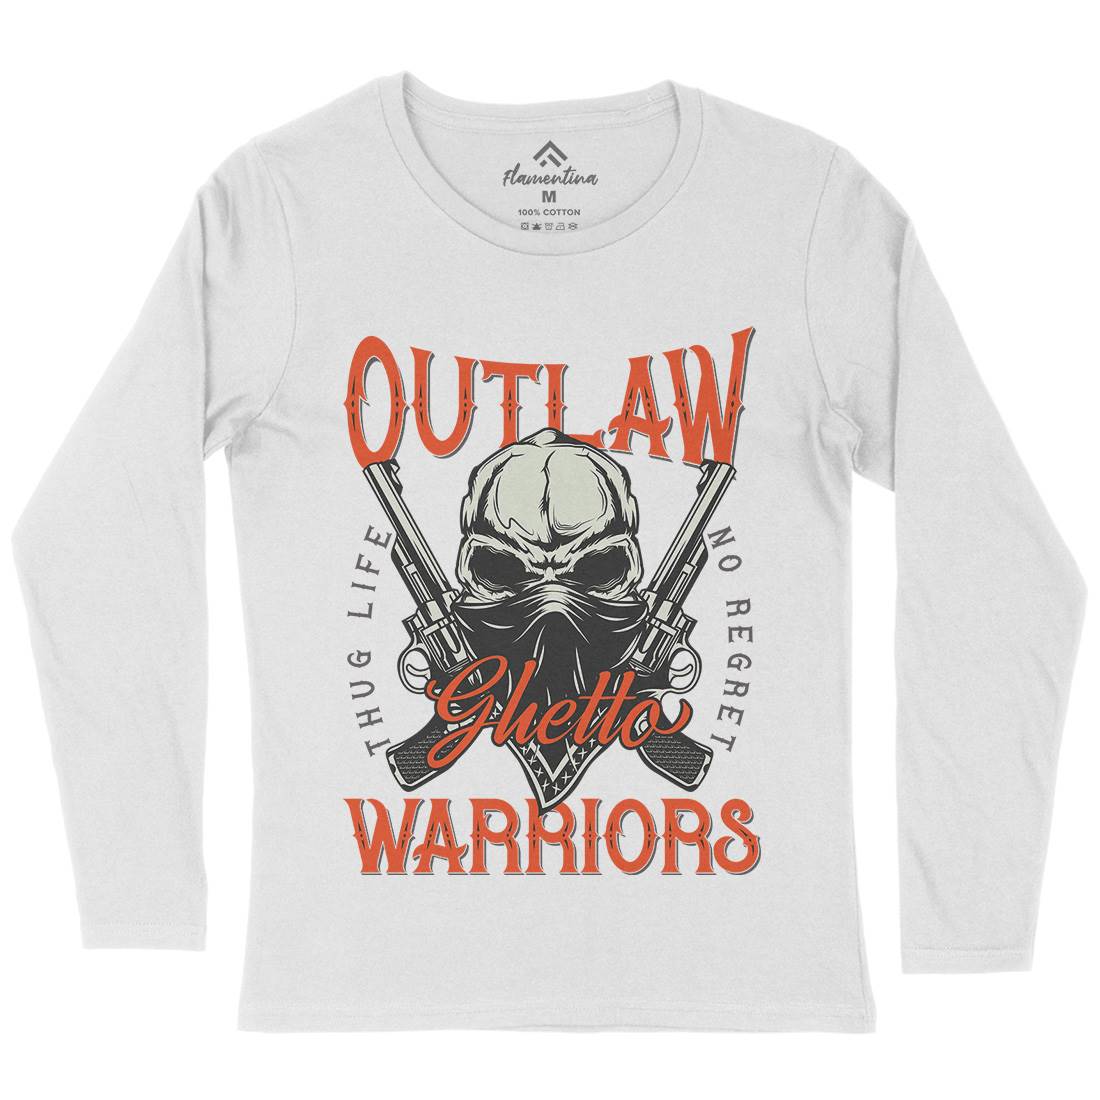 Outlaw Warriors Womens Long Sleeve T-Shirt Retro D959